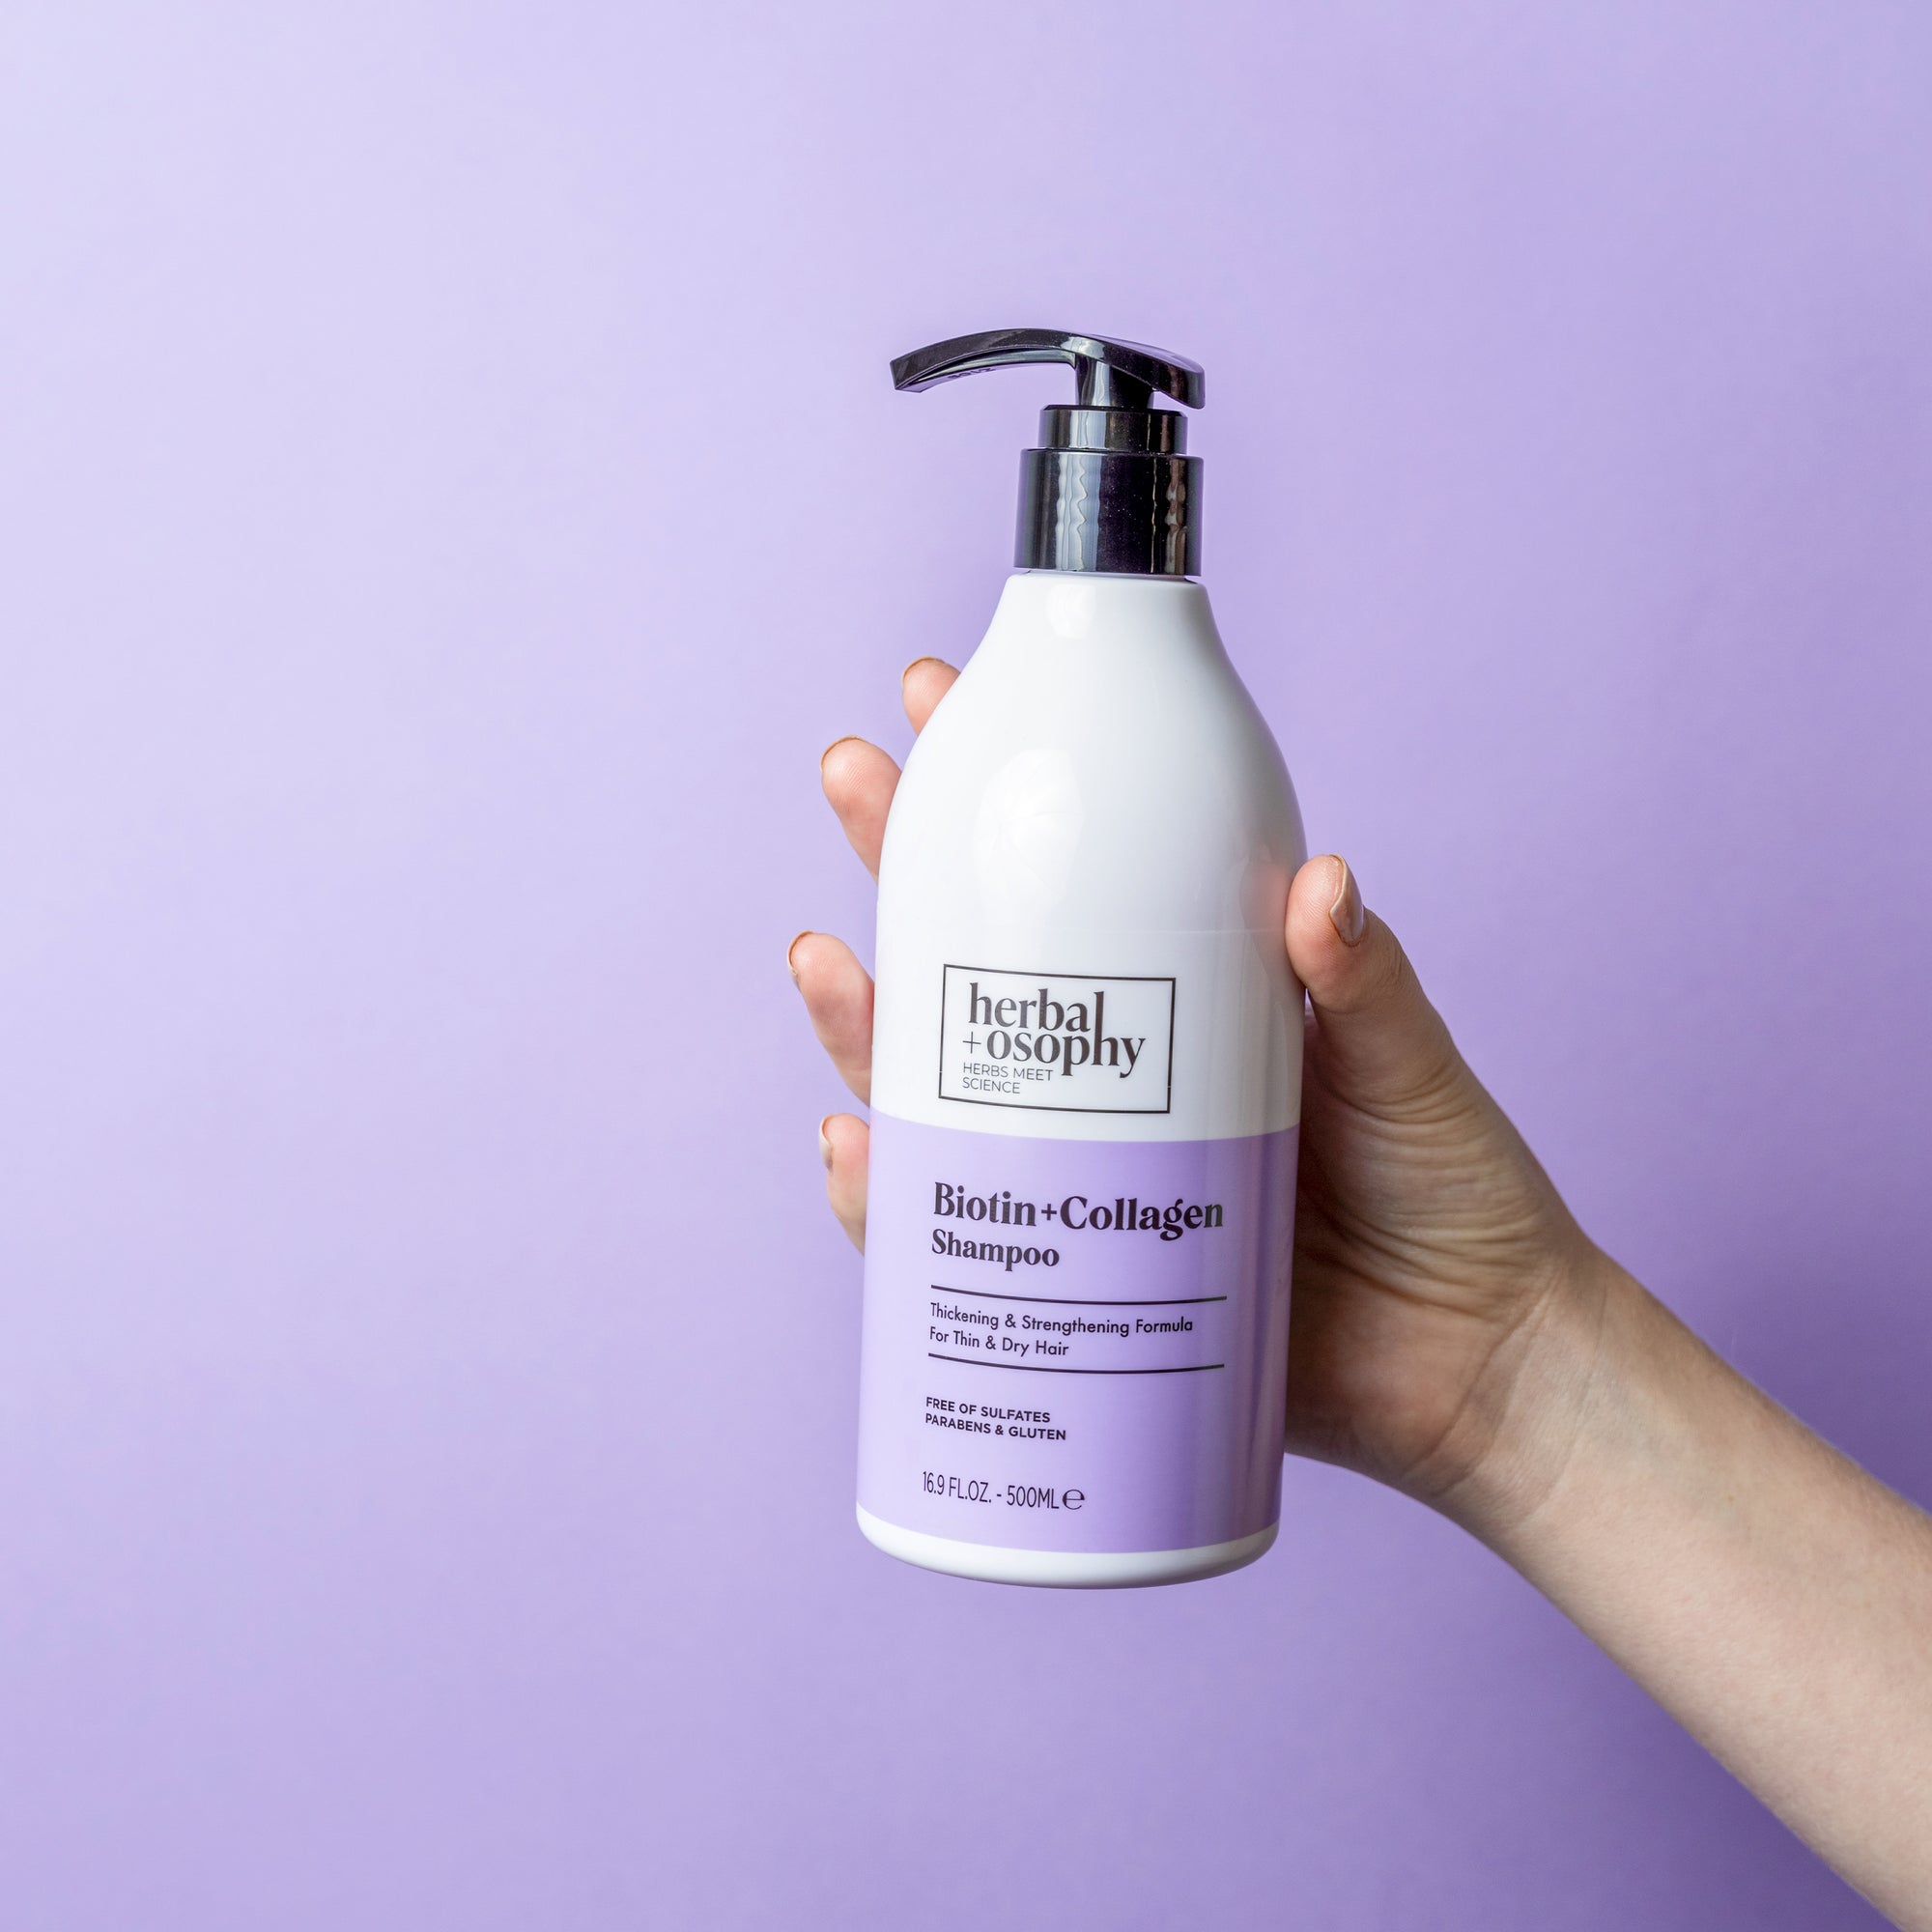 Biotin + Collagen Shampoo bottle held in front of purple backdrop